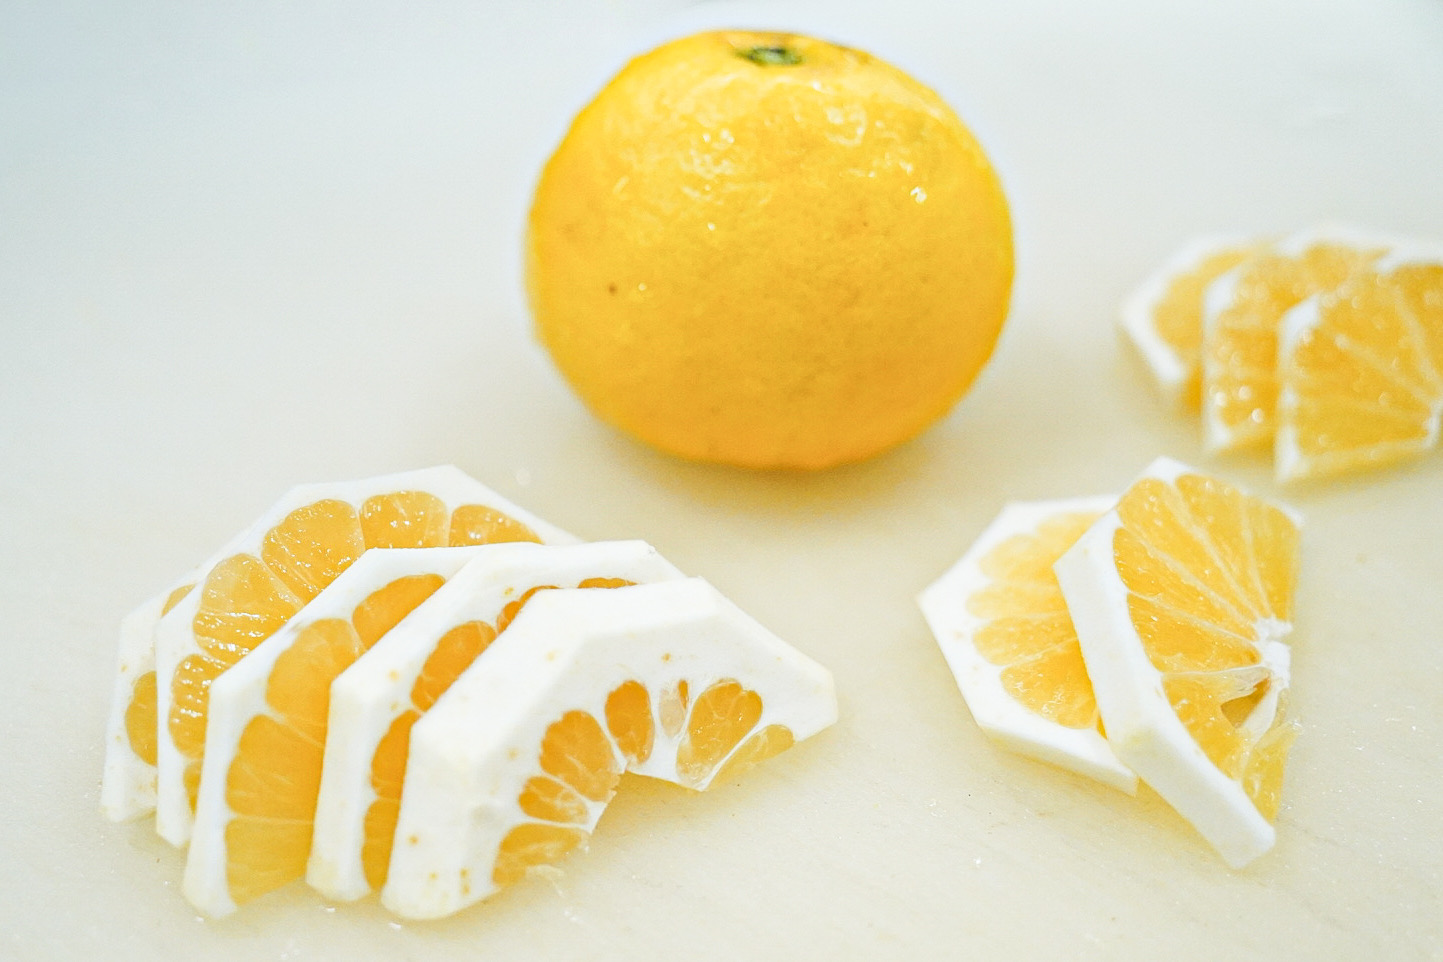 「鳥澤ファーム」さんのニューサマーオレンジをご用意。